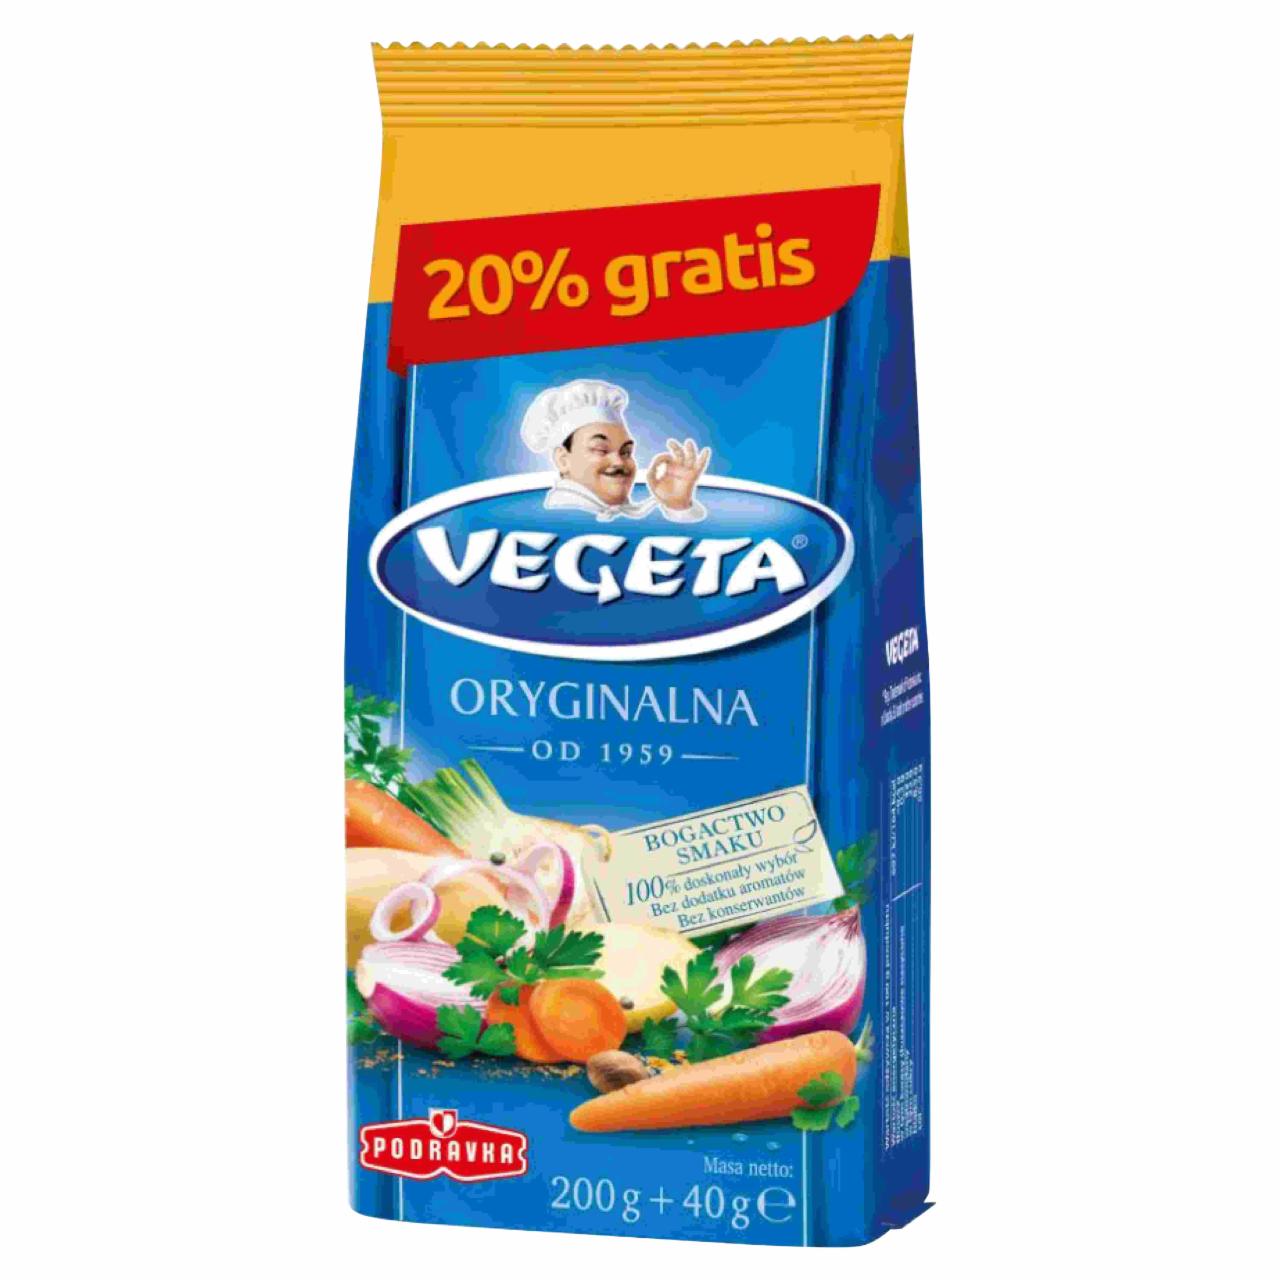 Zdjęcia - Vegeta Przyprawa warzywna do potraw 240 g